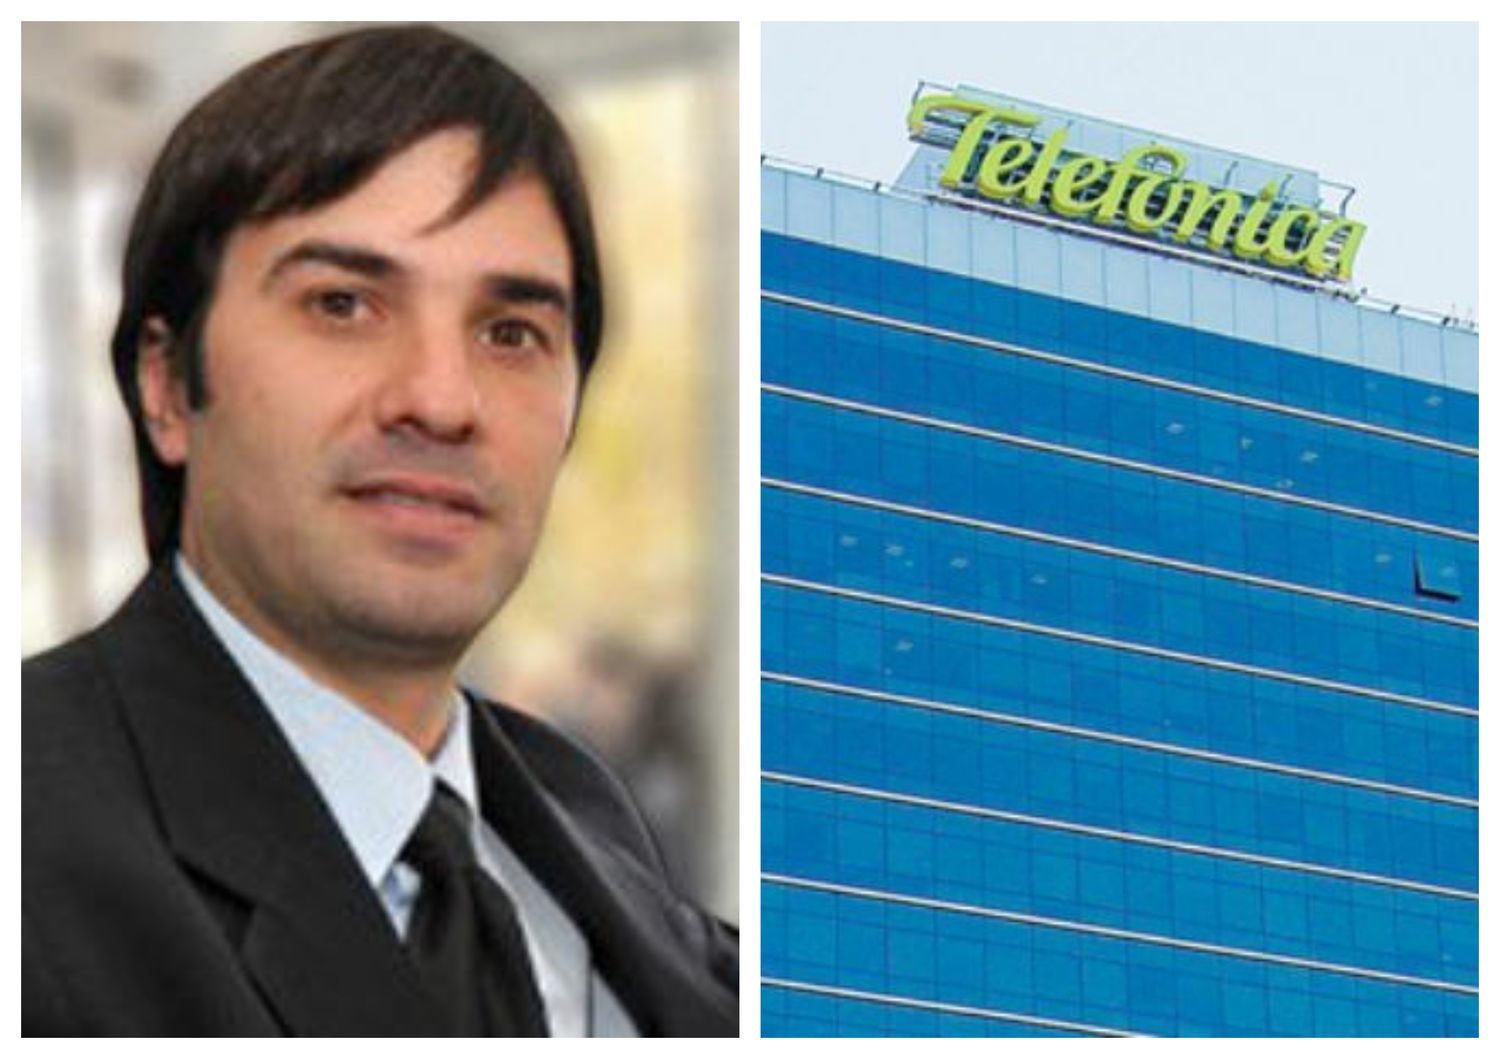 Devolución millonaria de Telefónica a Castelli: “Estas empresas no están acostumbradas a que le exijan el pago”, afirmó el intendente